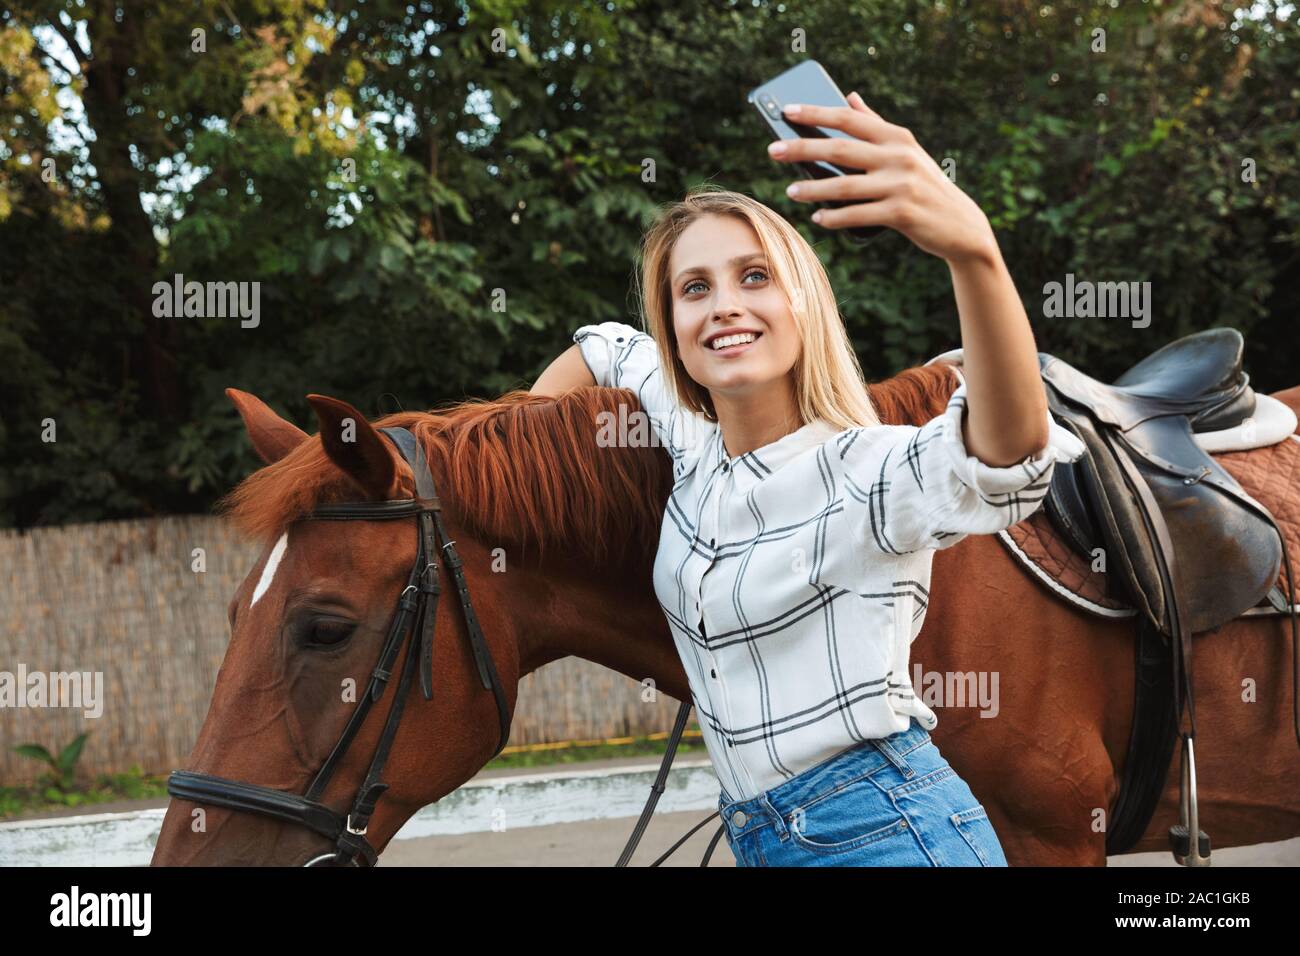 amateur riding selfie